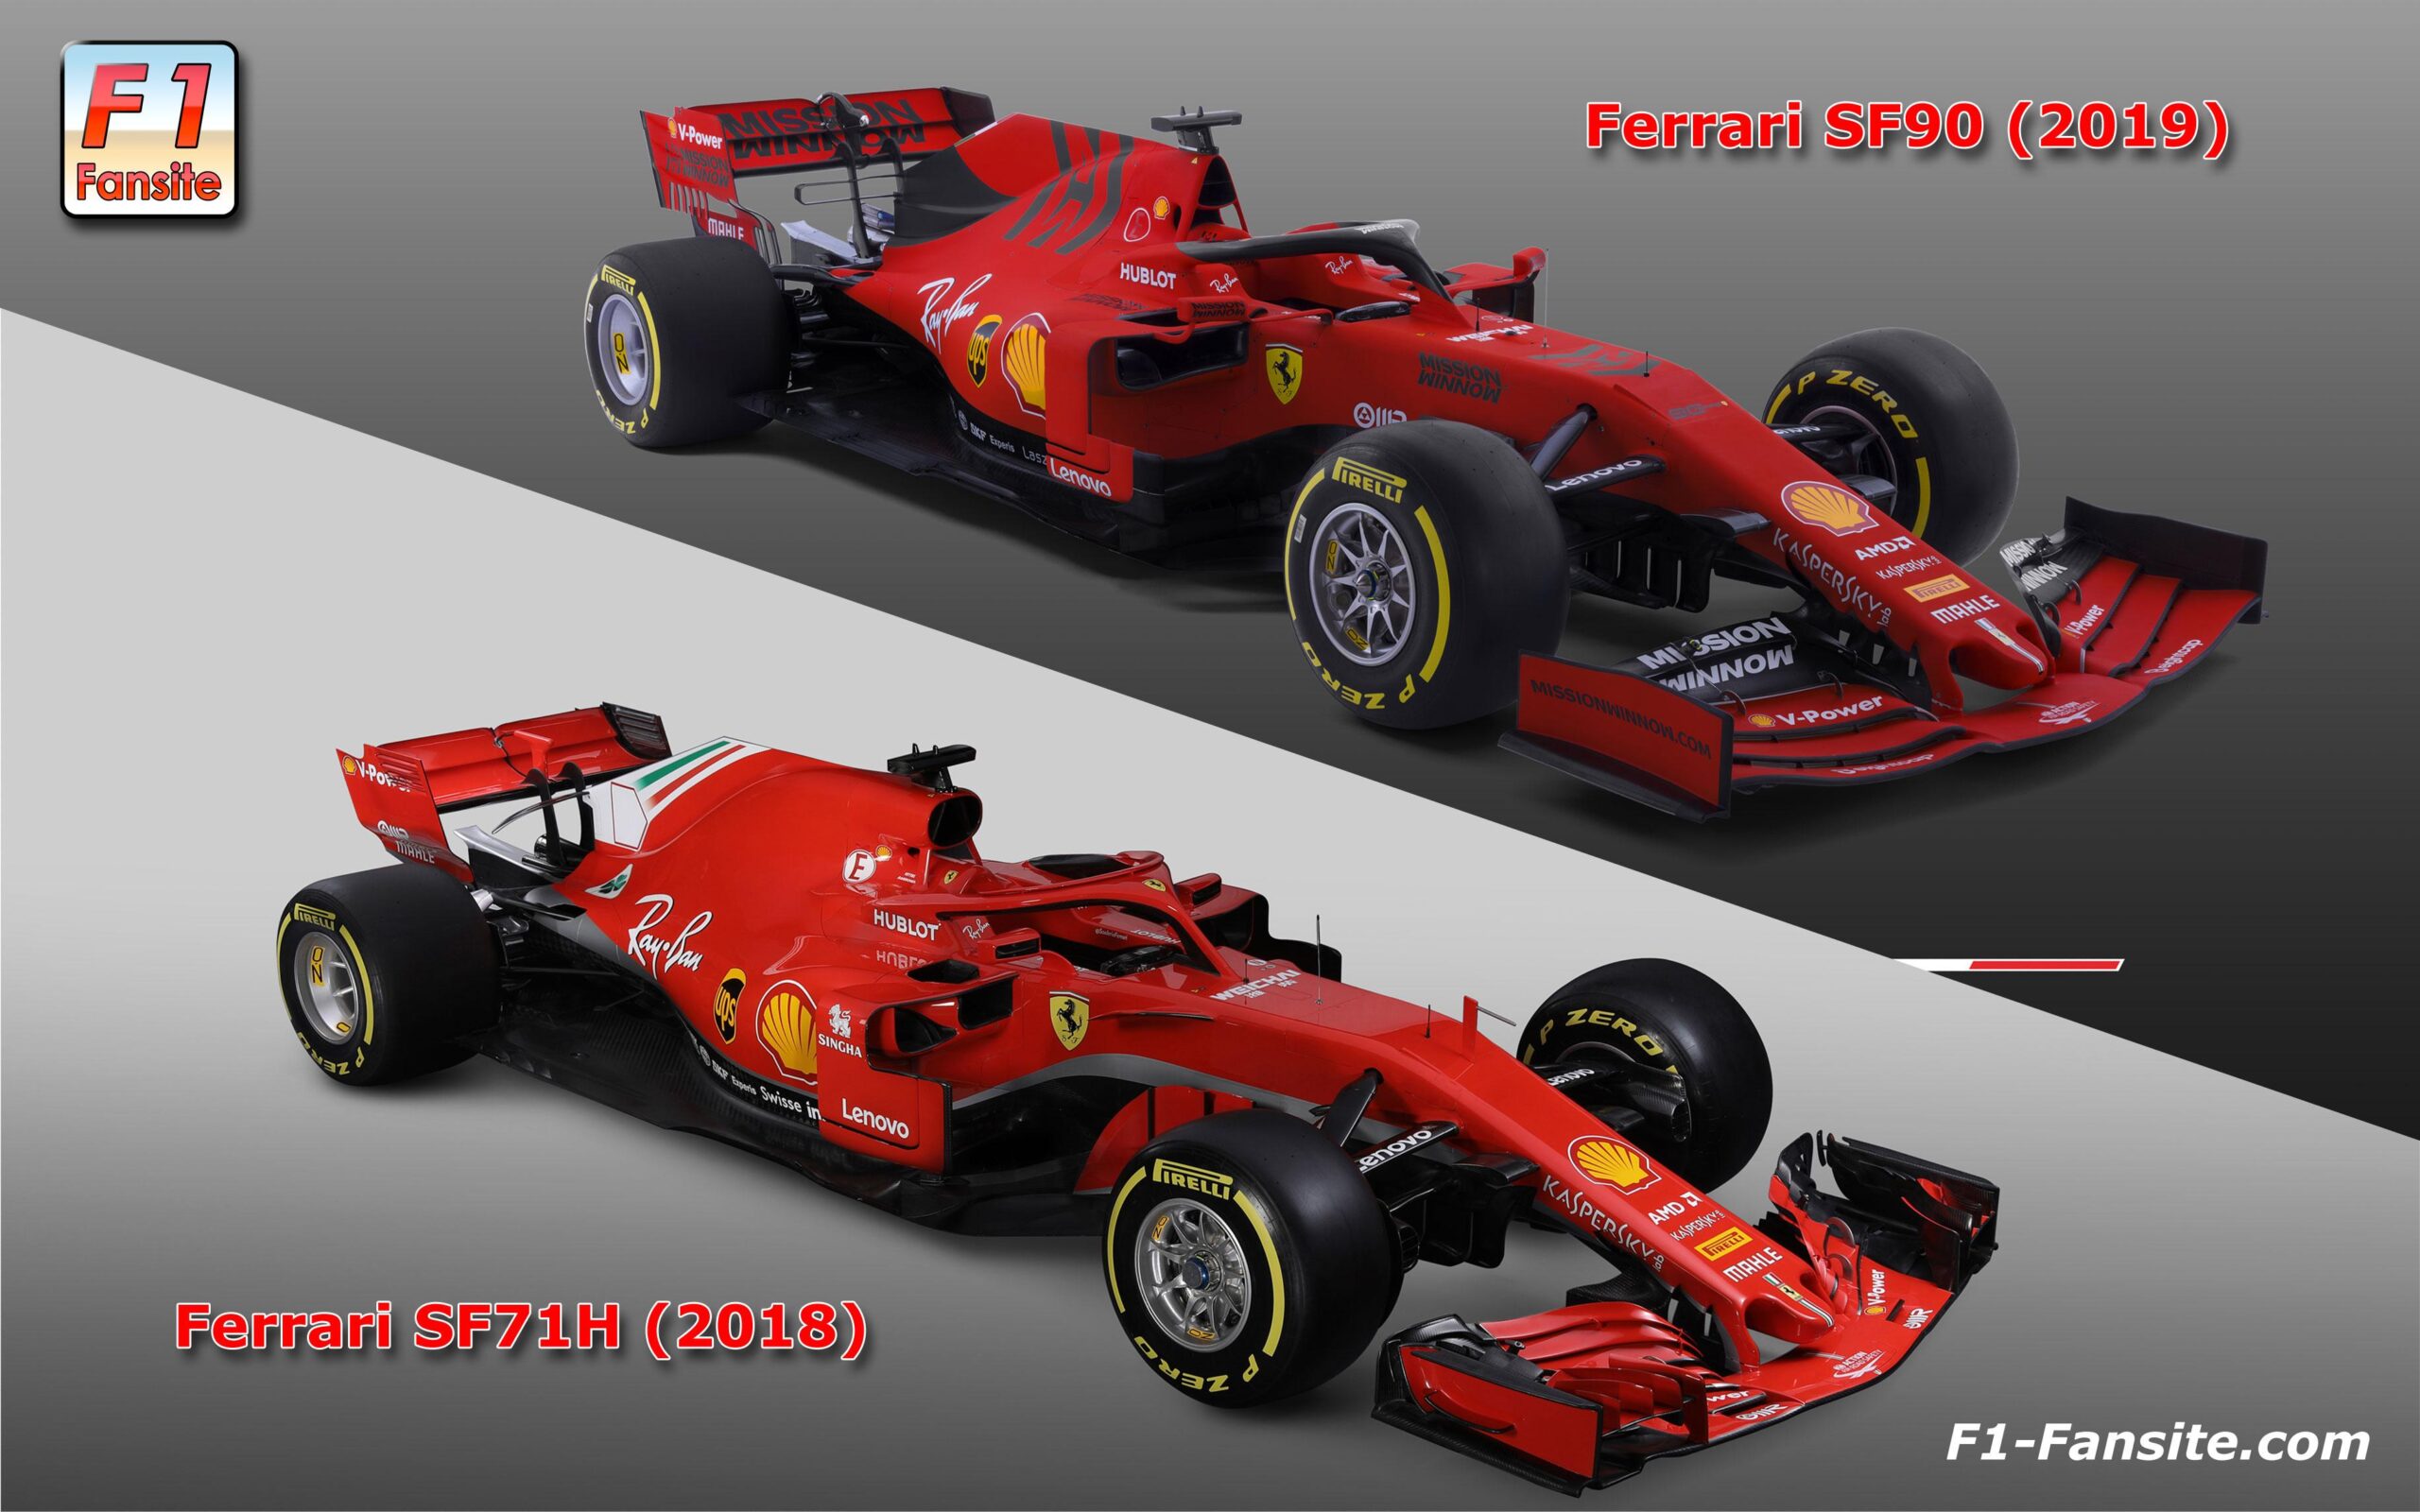 Ferrari SF F car technical details